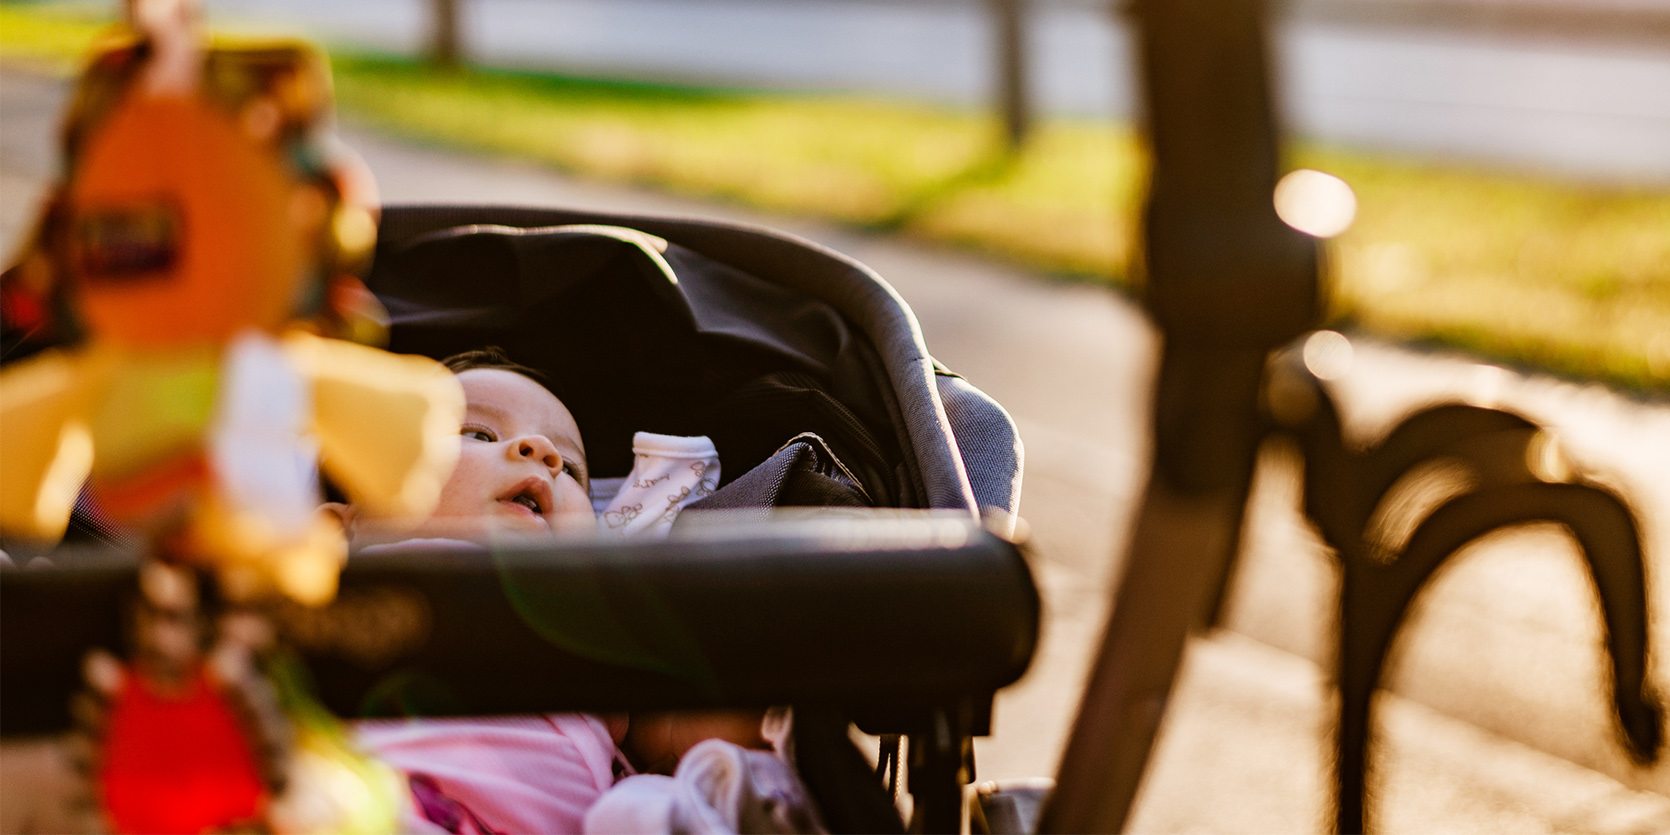 Dlaczego spacer z niemowlakiem jest ważny?/fot. iStock